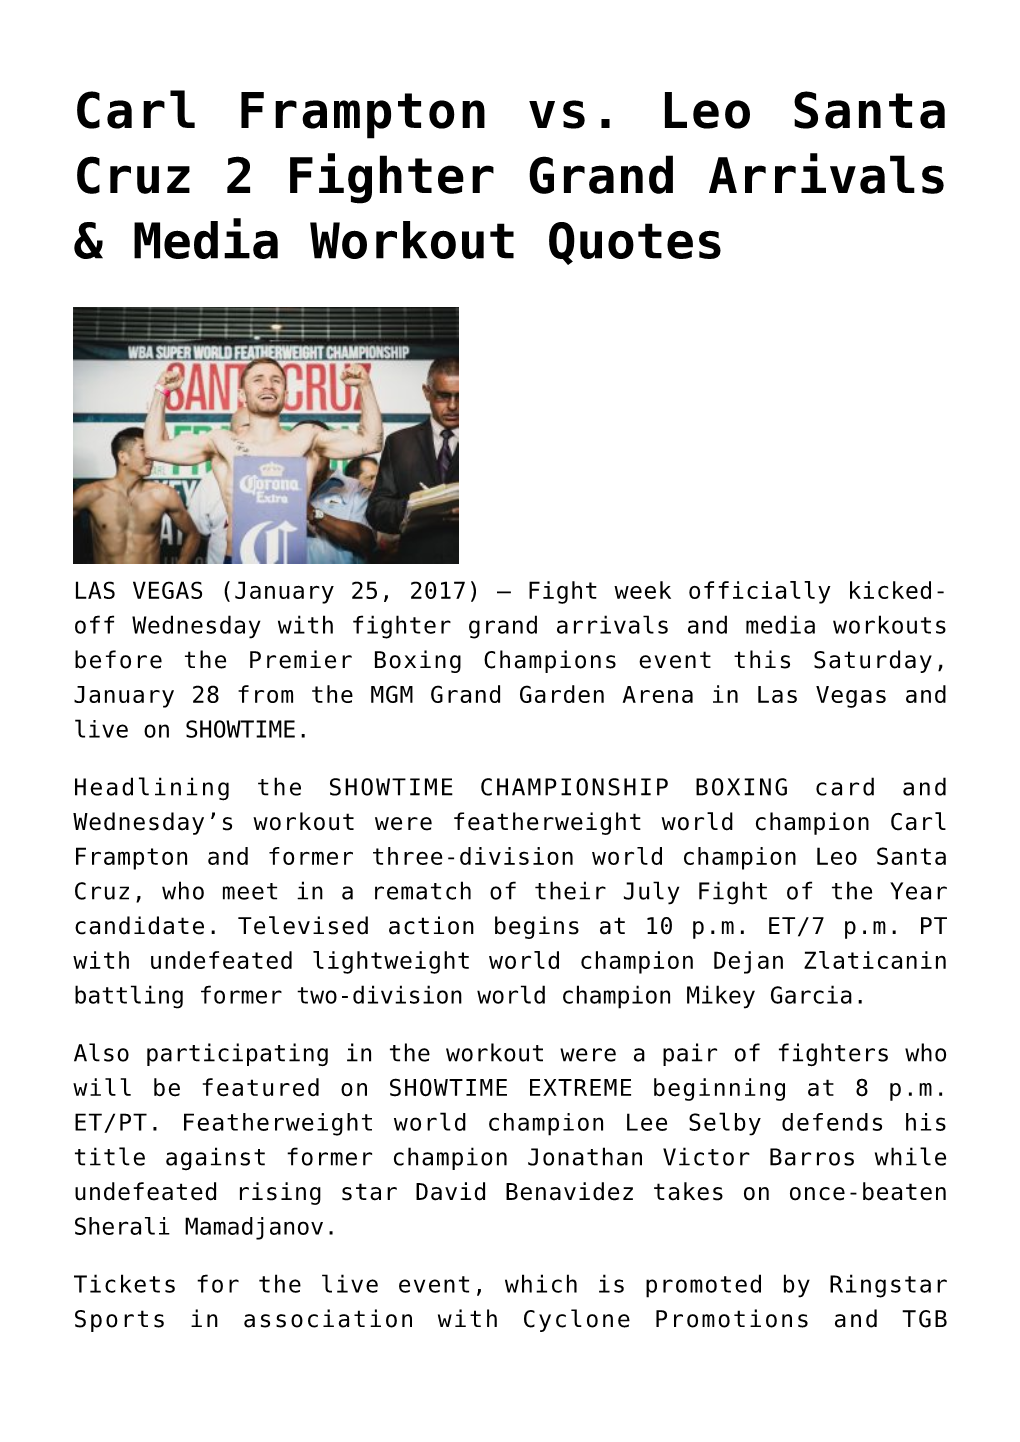 Carl Frampton Vs. Leo Santa Cruz 2 Fighter Grand Arrivals & Media